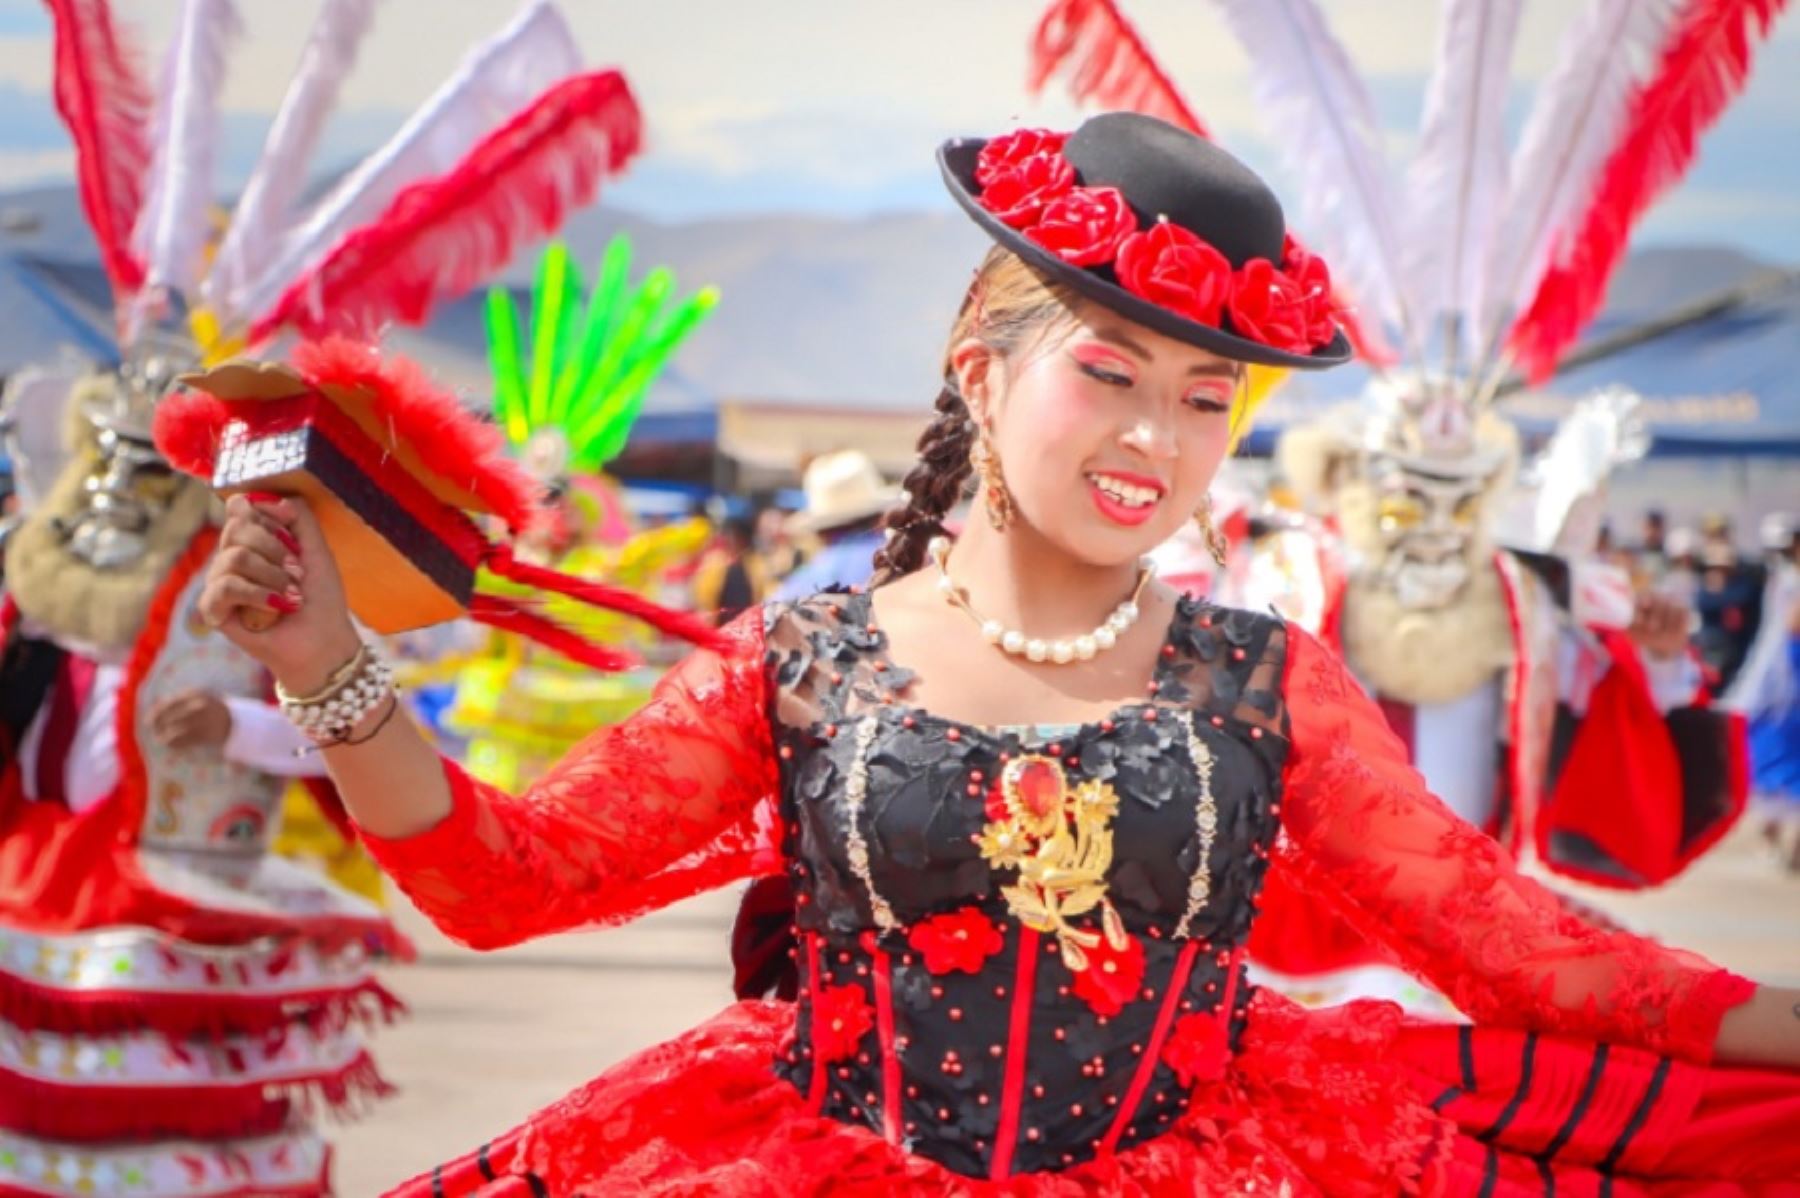 Conocido como el “Carnaval más extenso y fastuoso del Perú” y una de las festividades costumbristas más emblemáticas y multitudinarias de la región Puno, el carnaval de Juliaca se desarrolla sin pausa durante siete días y desborda alegría contagiante, destellante colorido y riqueza cultural.